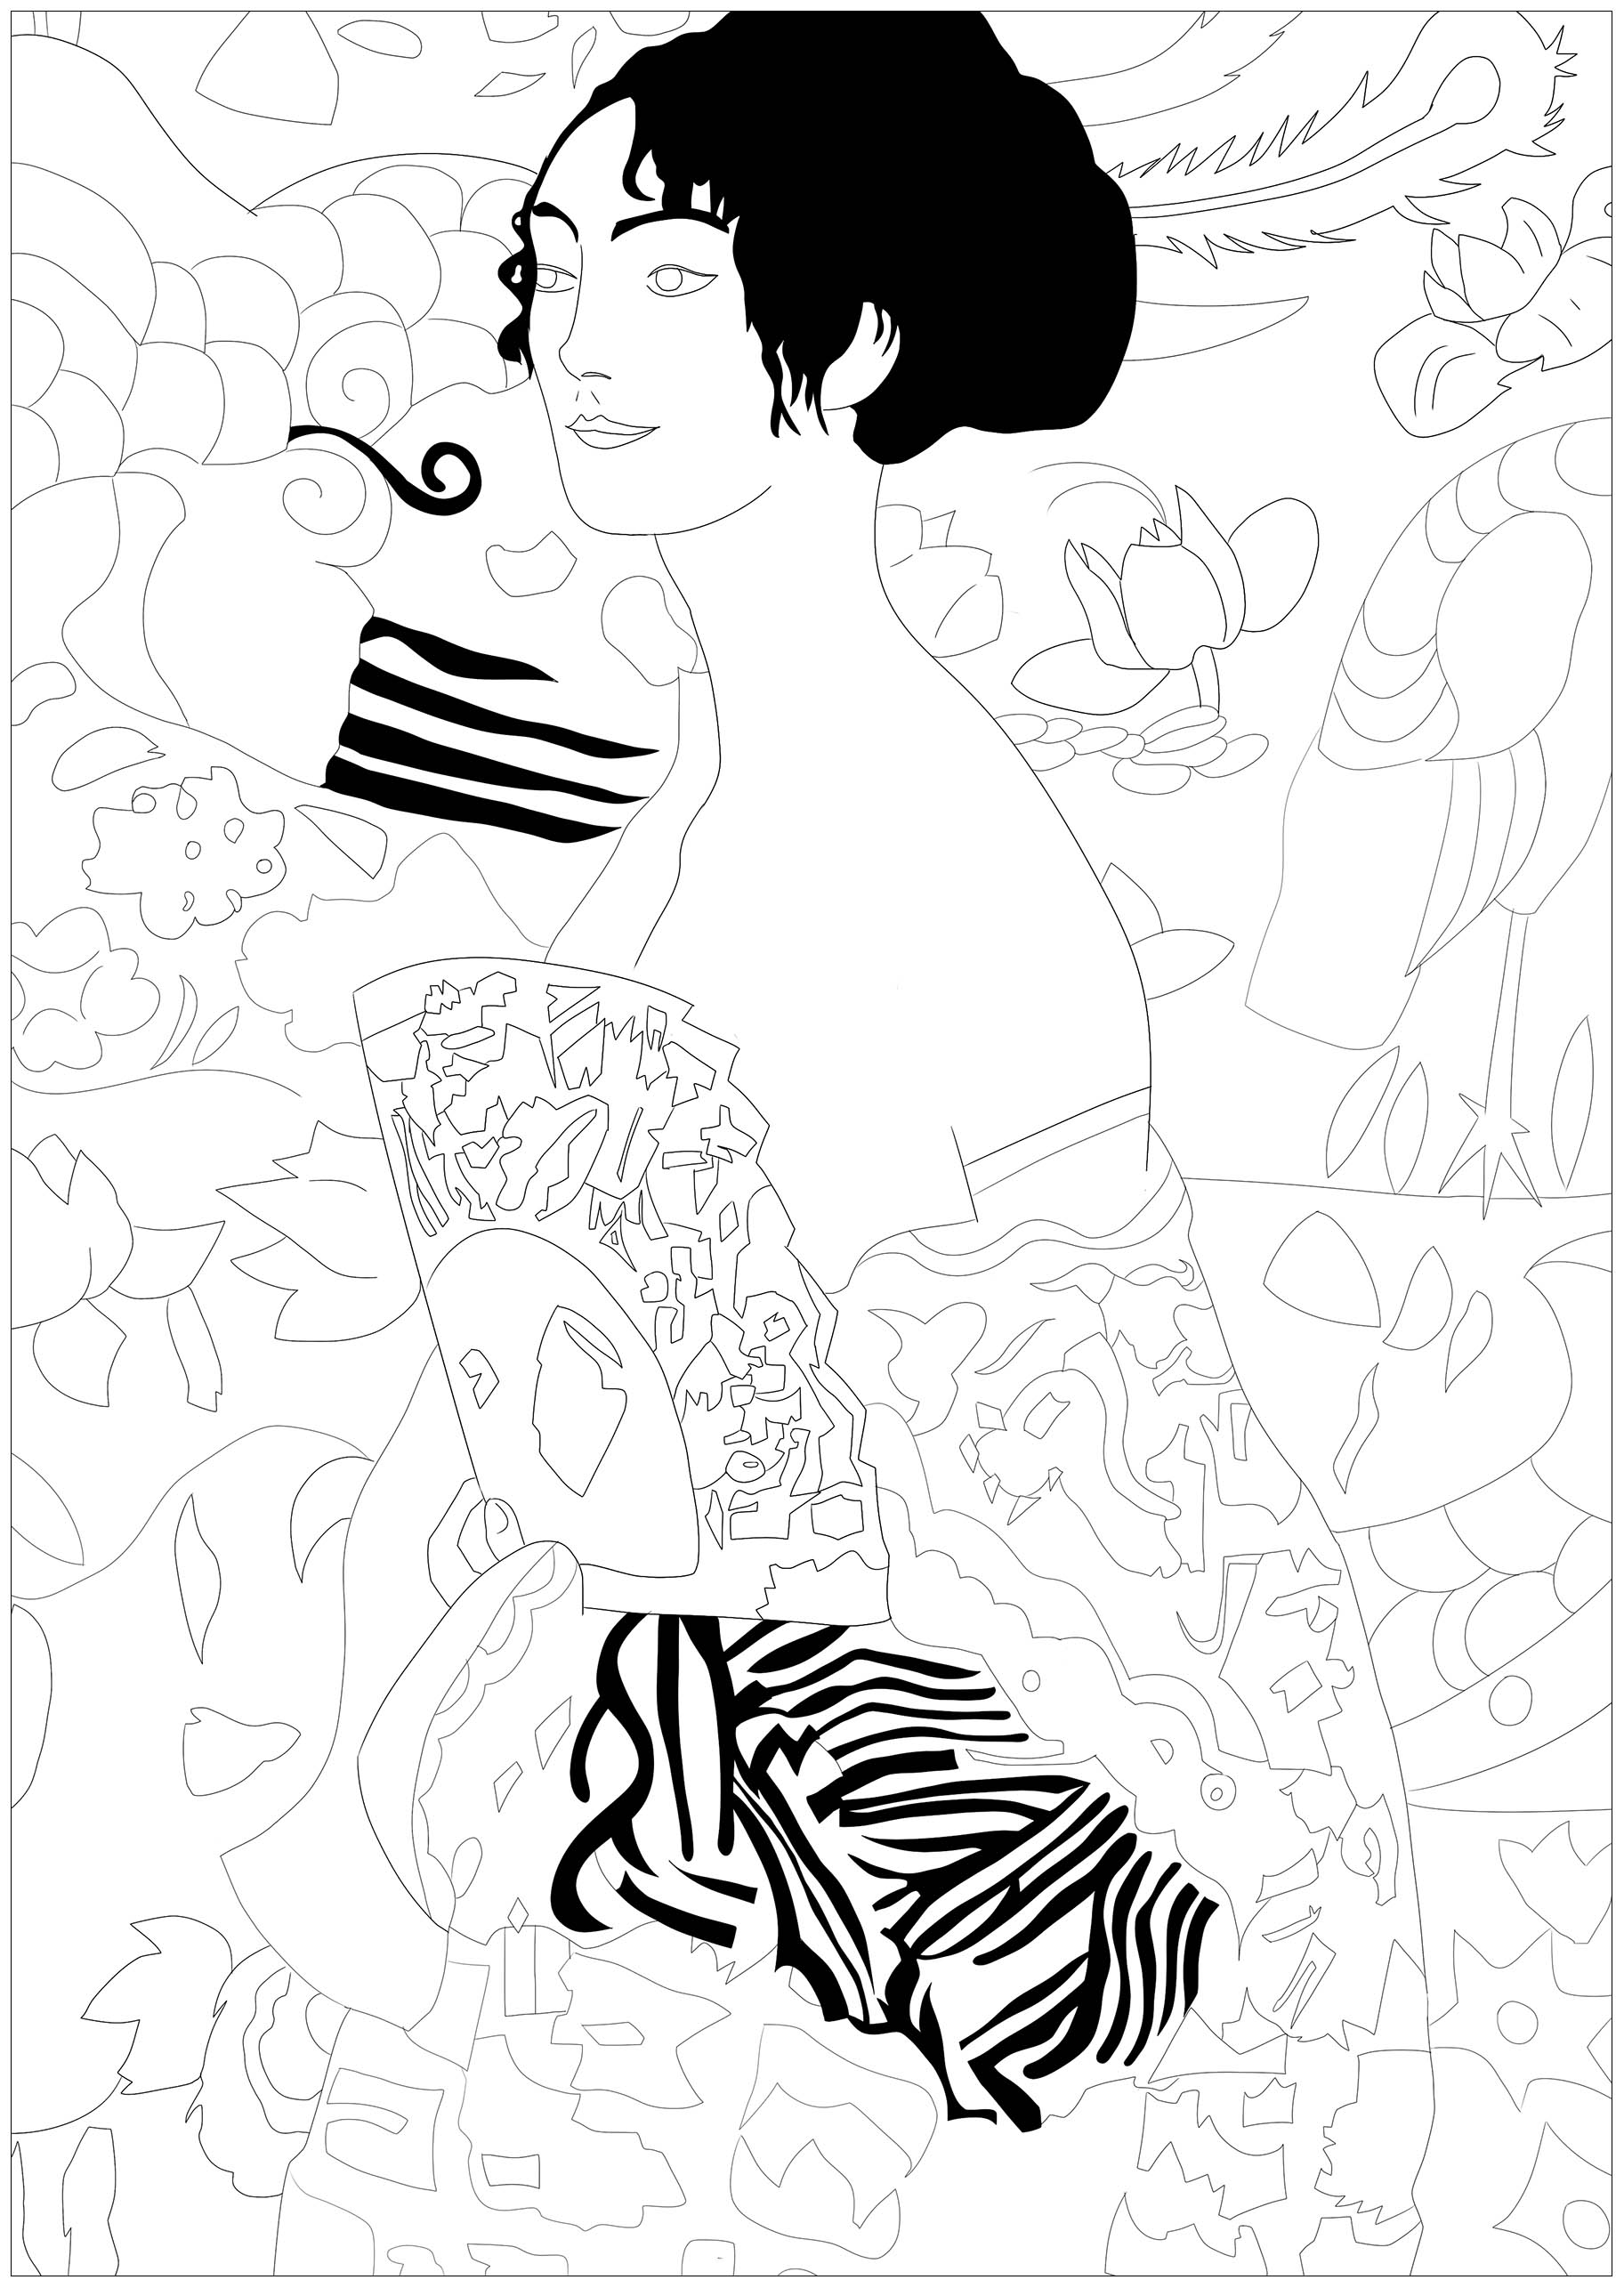 Dibujos para colorear gratis de Klimt para imprimir y colorear, para niños